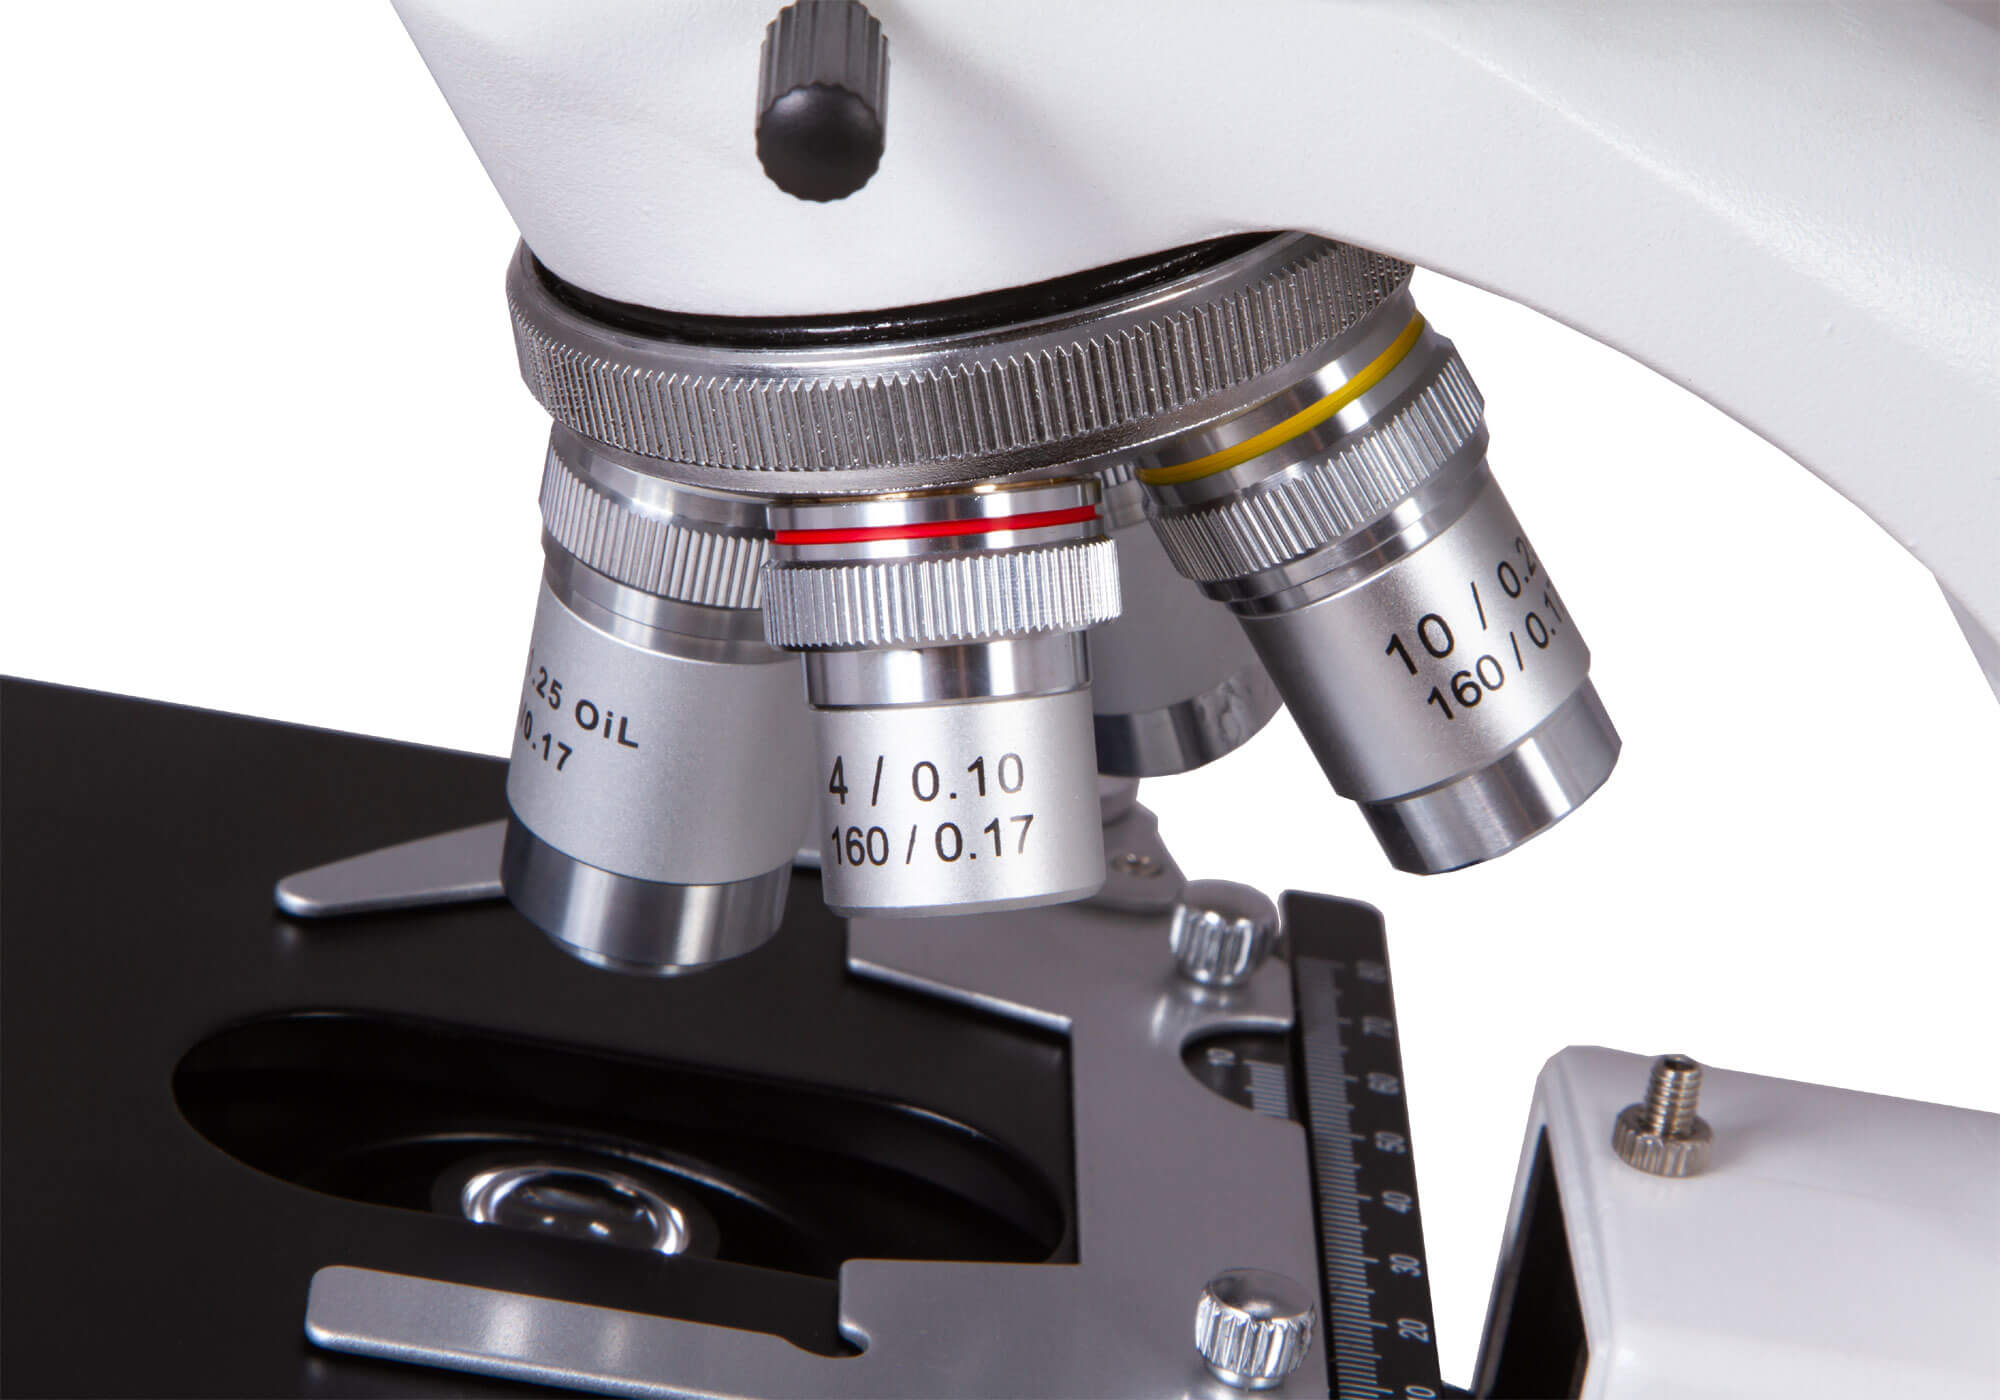 Digitálny trinokulárny mikroskop Levenhuk MED D10T LCD